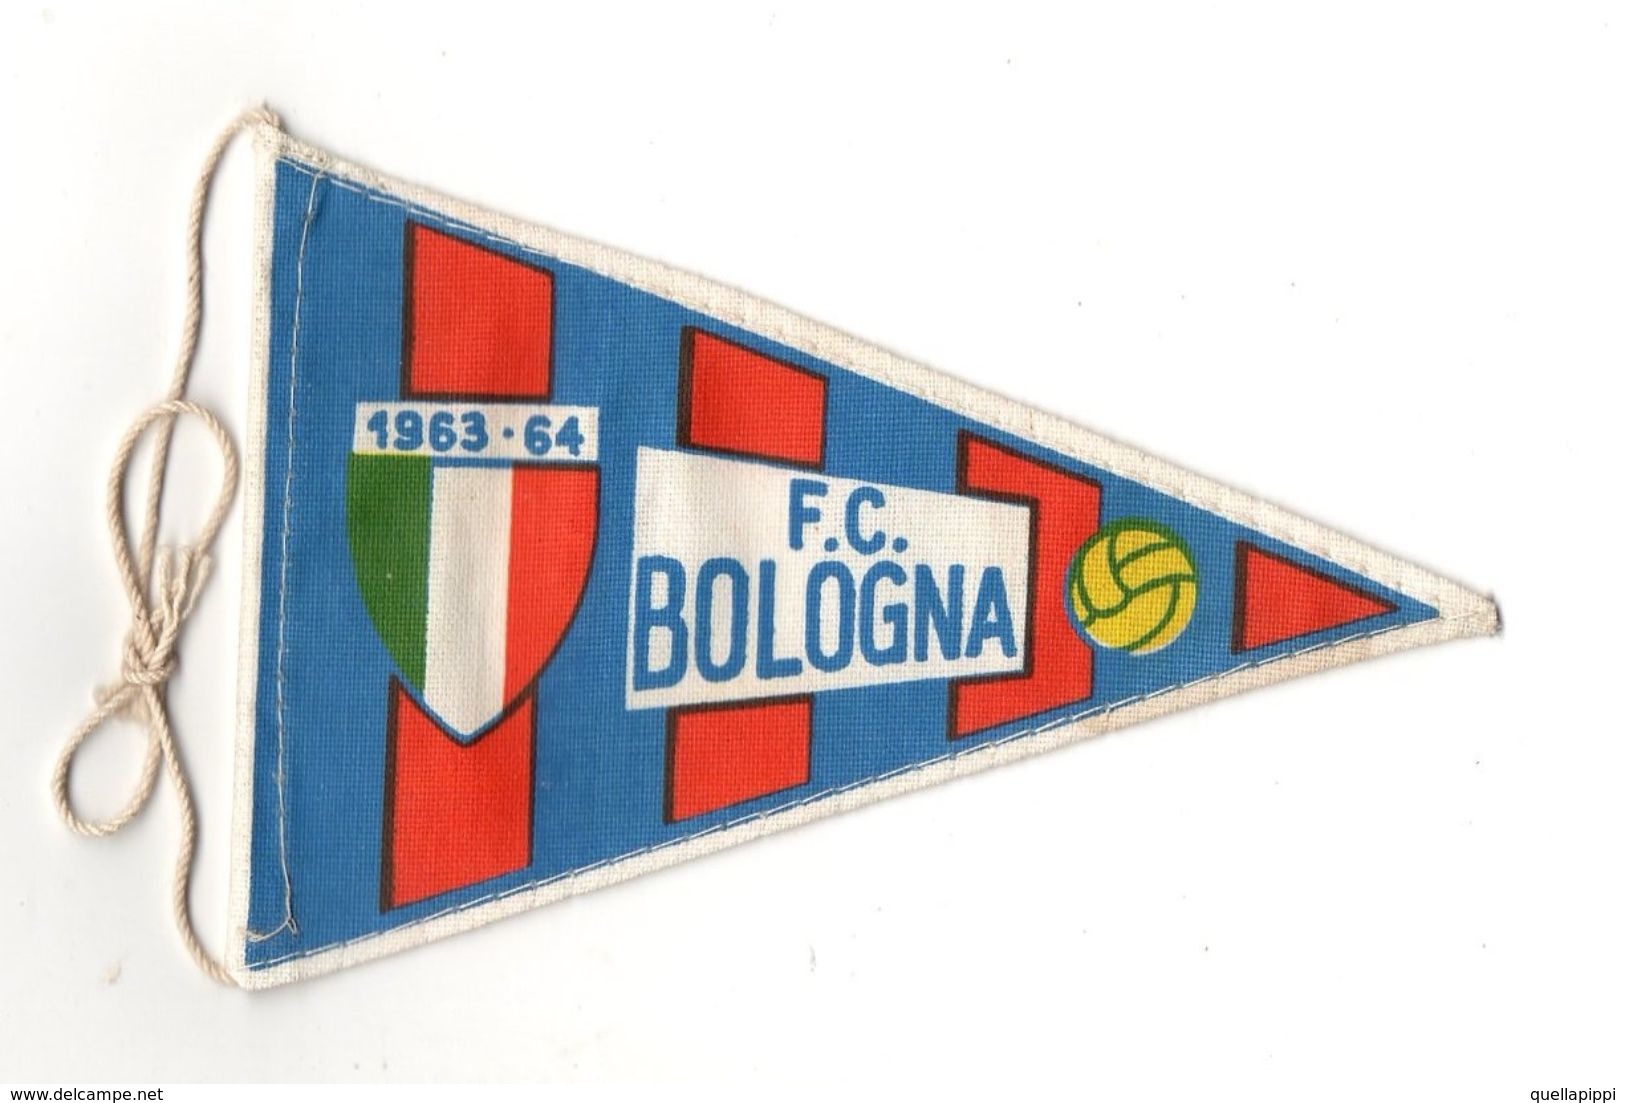 07130 "BOLOGNA F.C. FOOTBALL CLUB - BANDIERINA BIFRONTE IN STOFFA CON LEGACCI" ANNI 1963/1964 ORIG. - Apparel, Souvenirs & Other